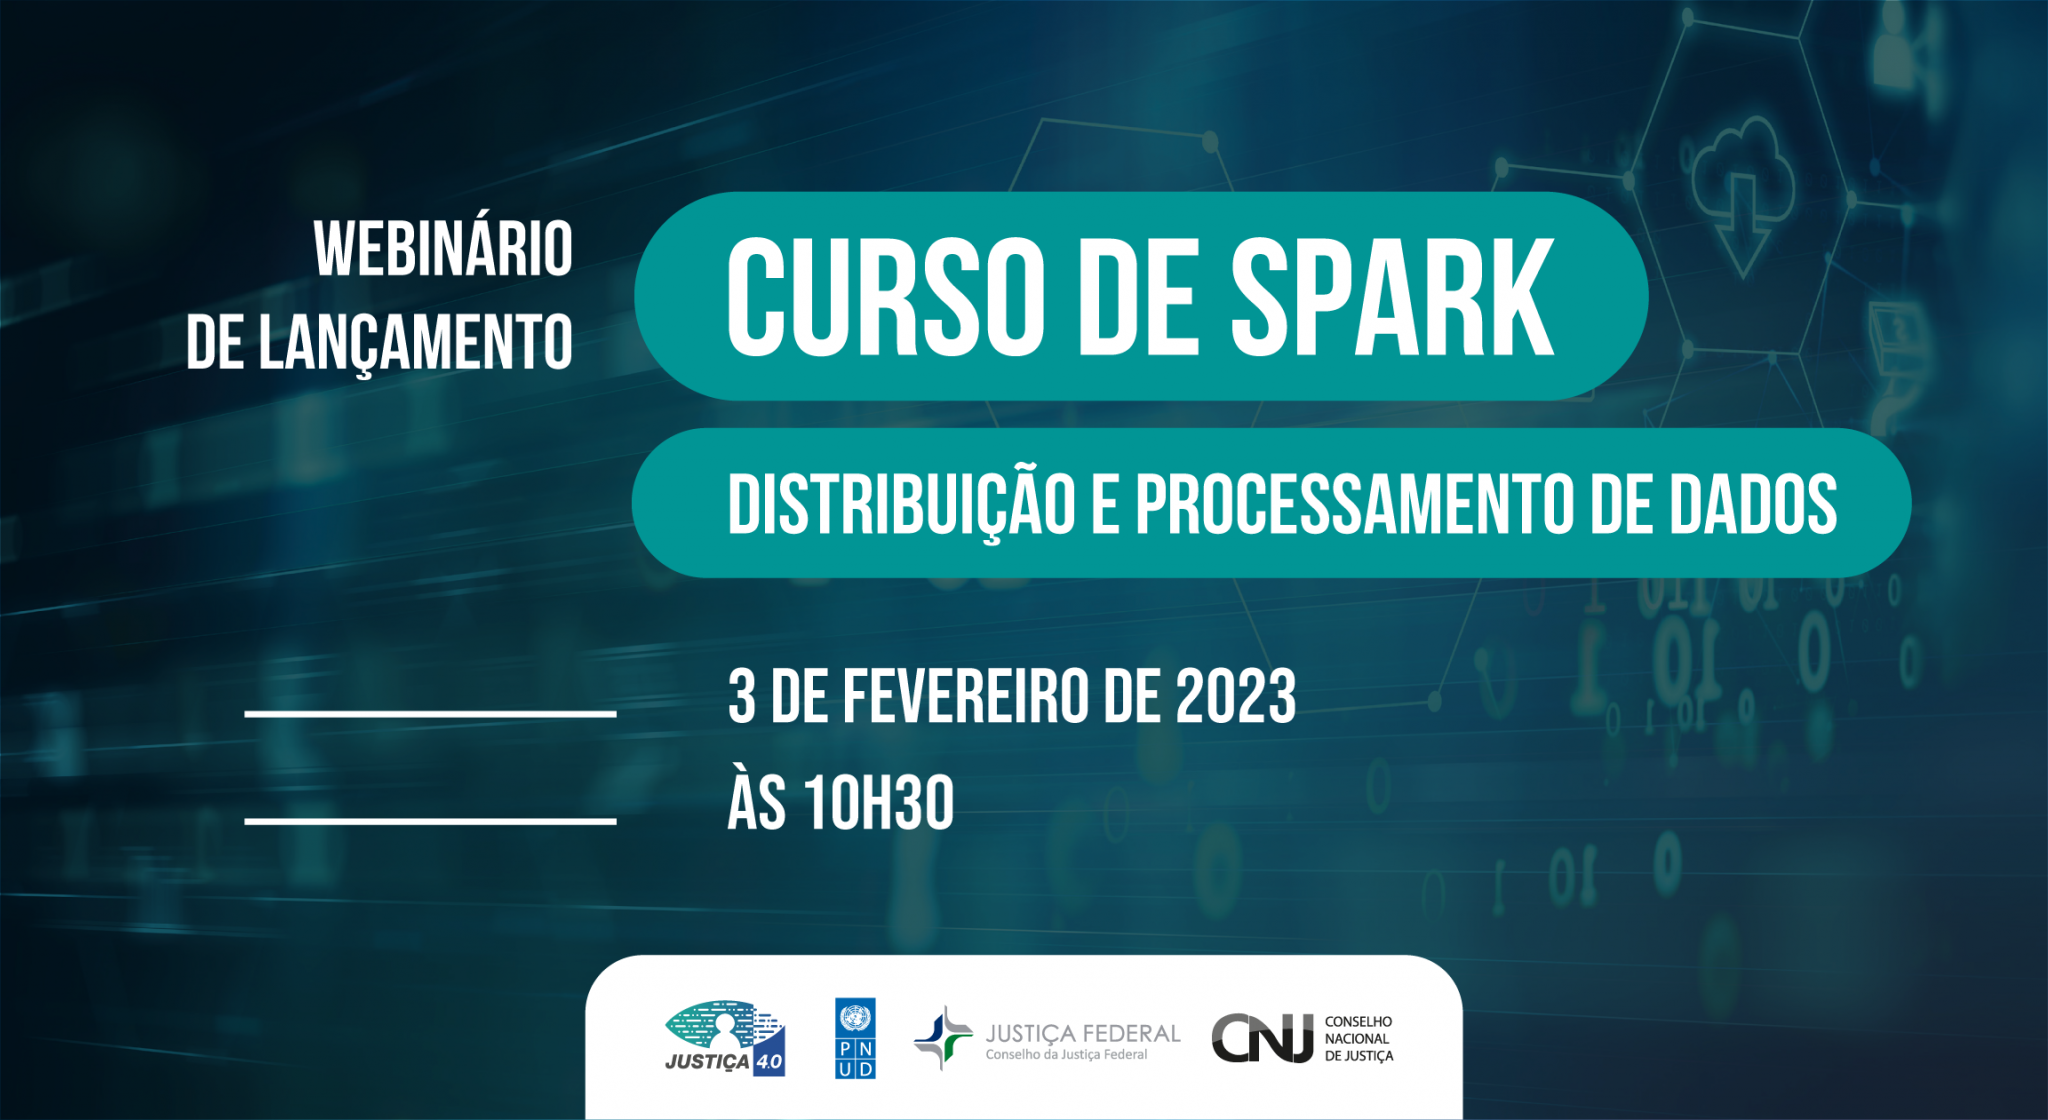 INSTITUCIONAL: CNJ promove webinário de lançamento do curso de Spark para servidores do Judiciário nesta sexta-feira (3/2)